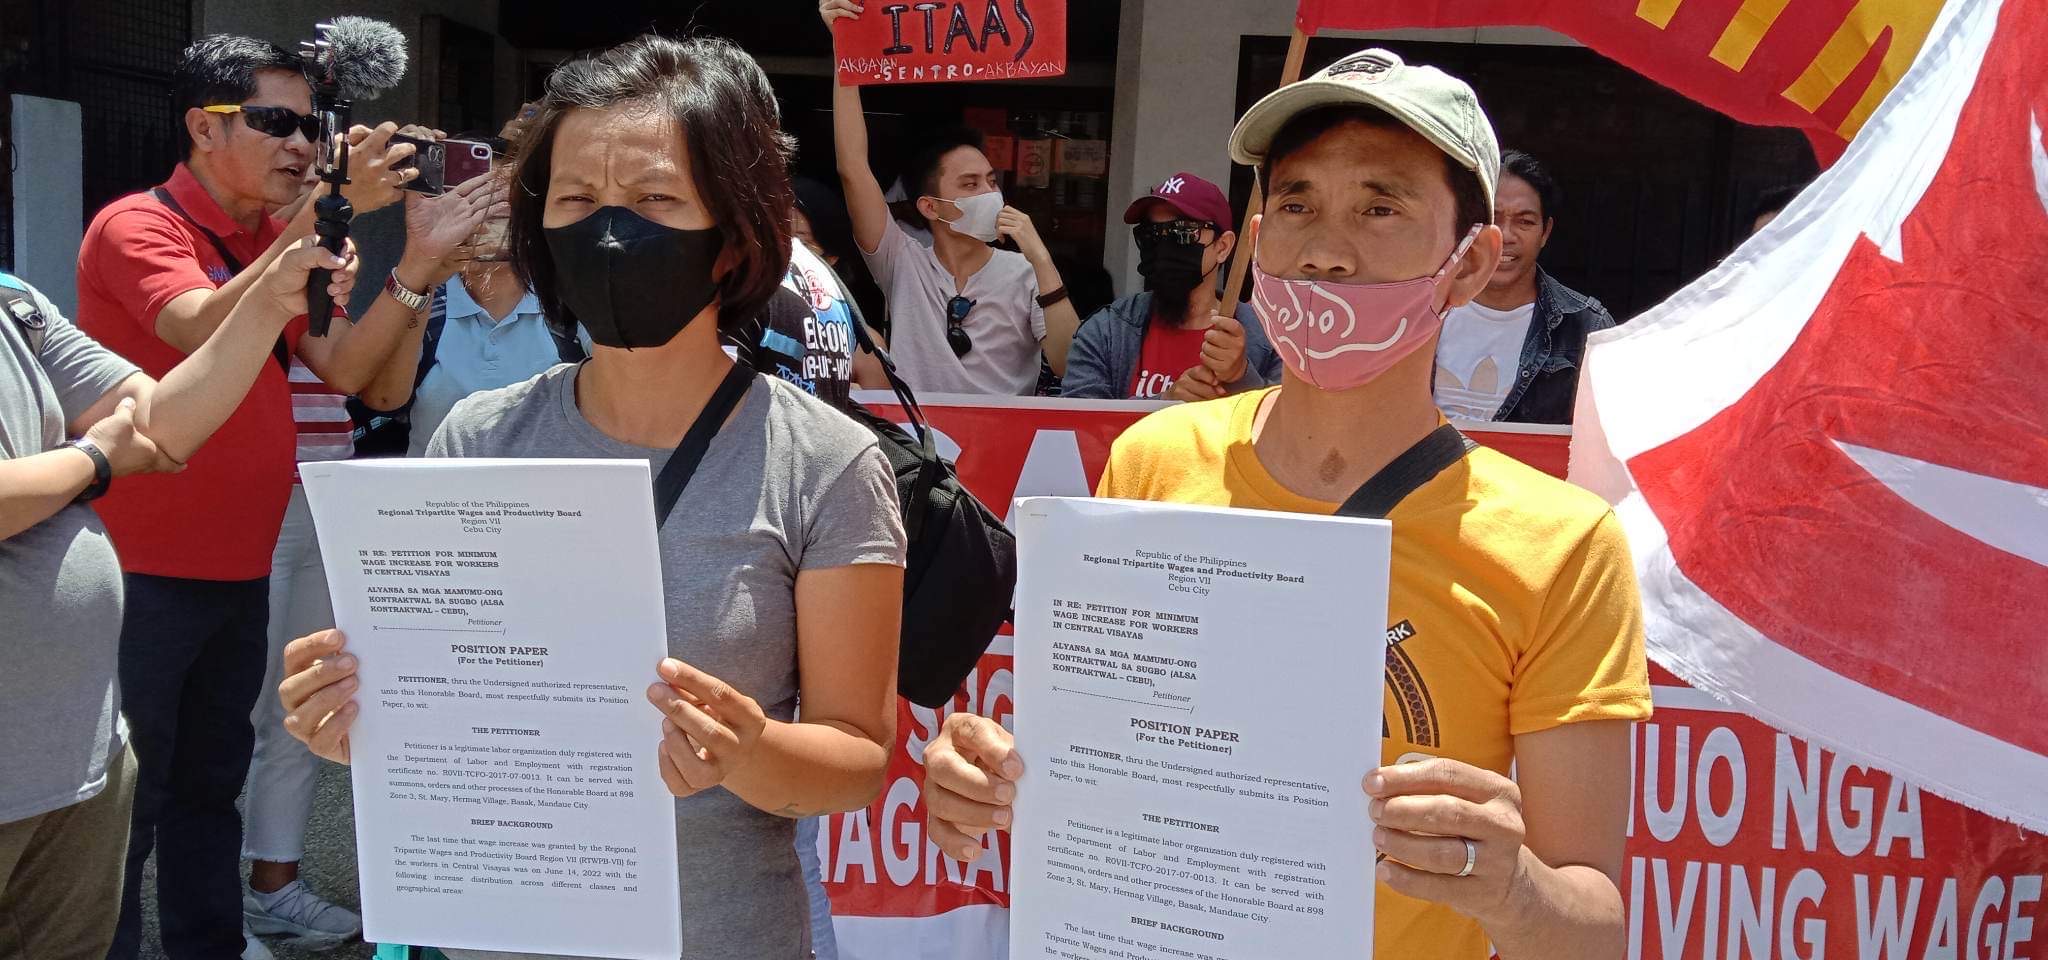 Labor group in Cebu wants ‘immediate P100wage increase’